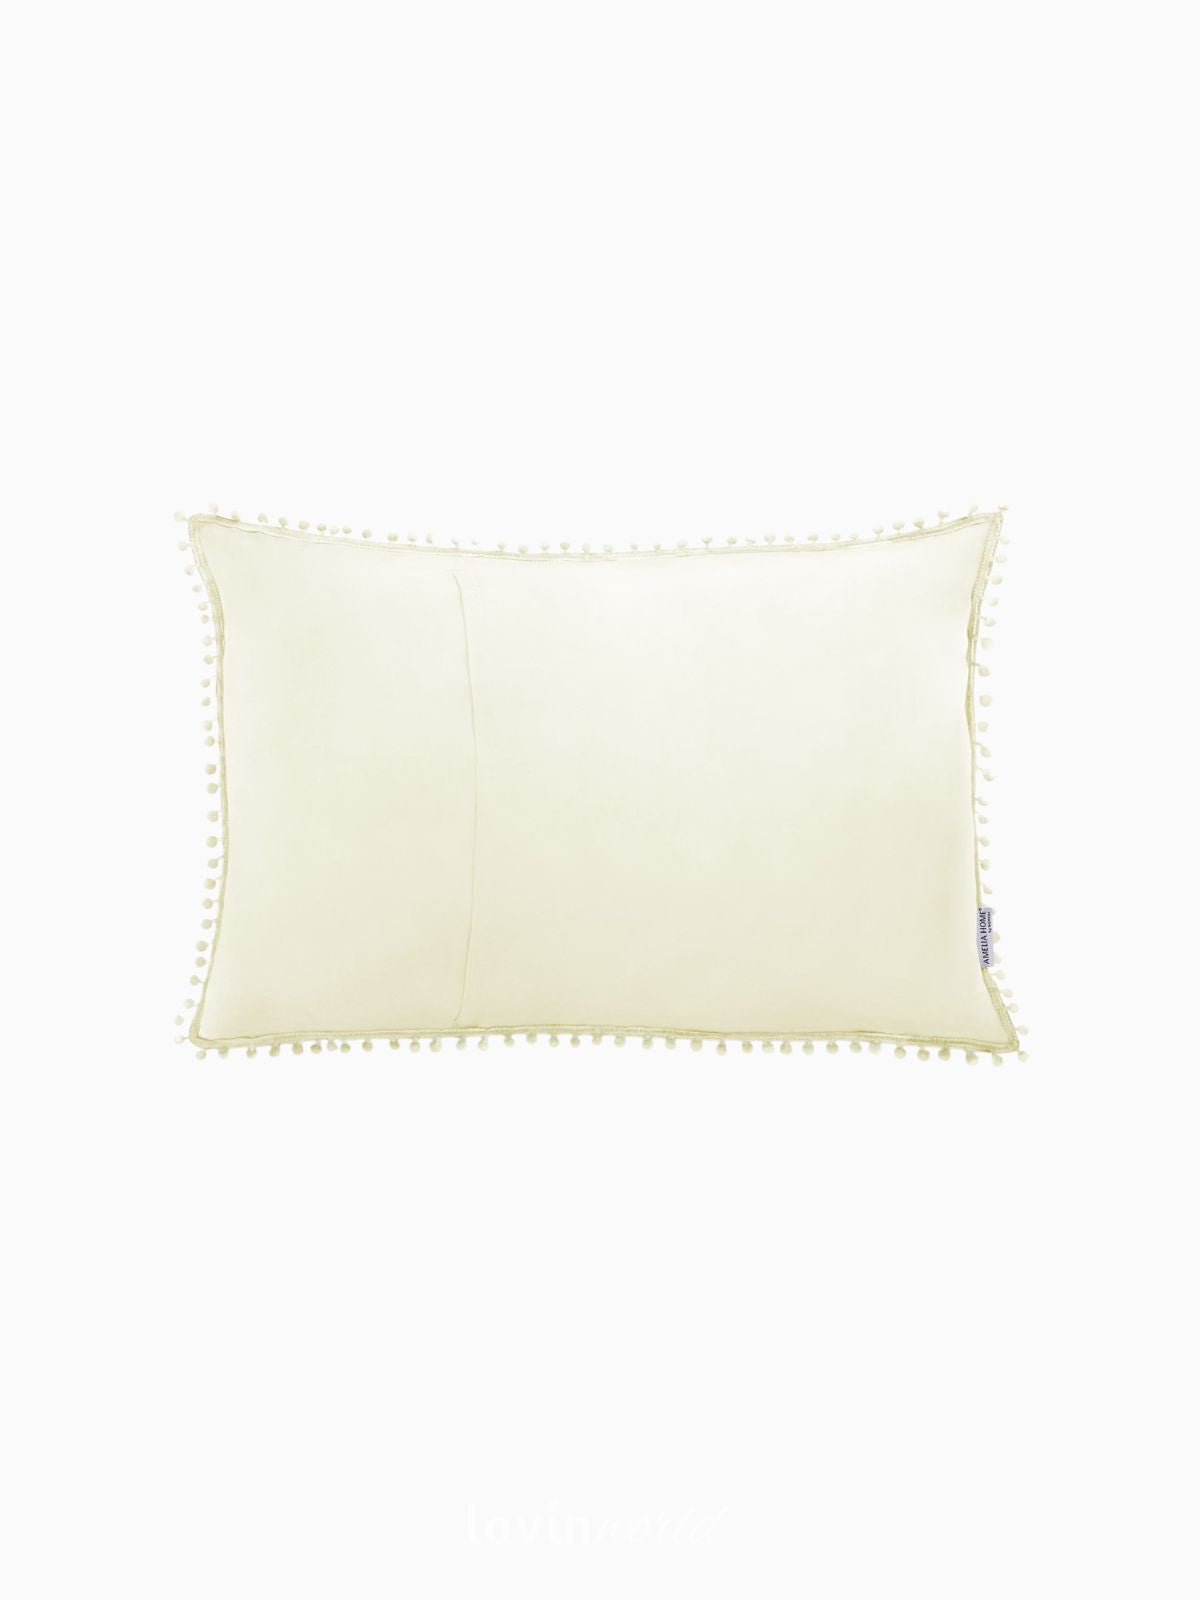 Cuscino decorativo Meadore in colore crema 50x70 cm.-2